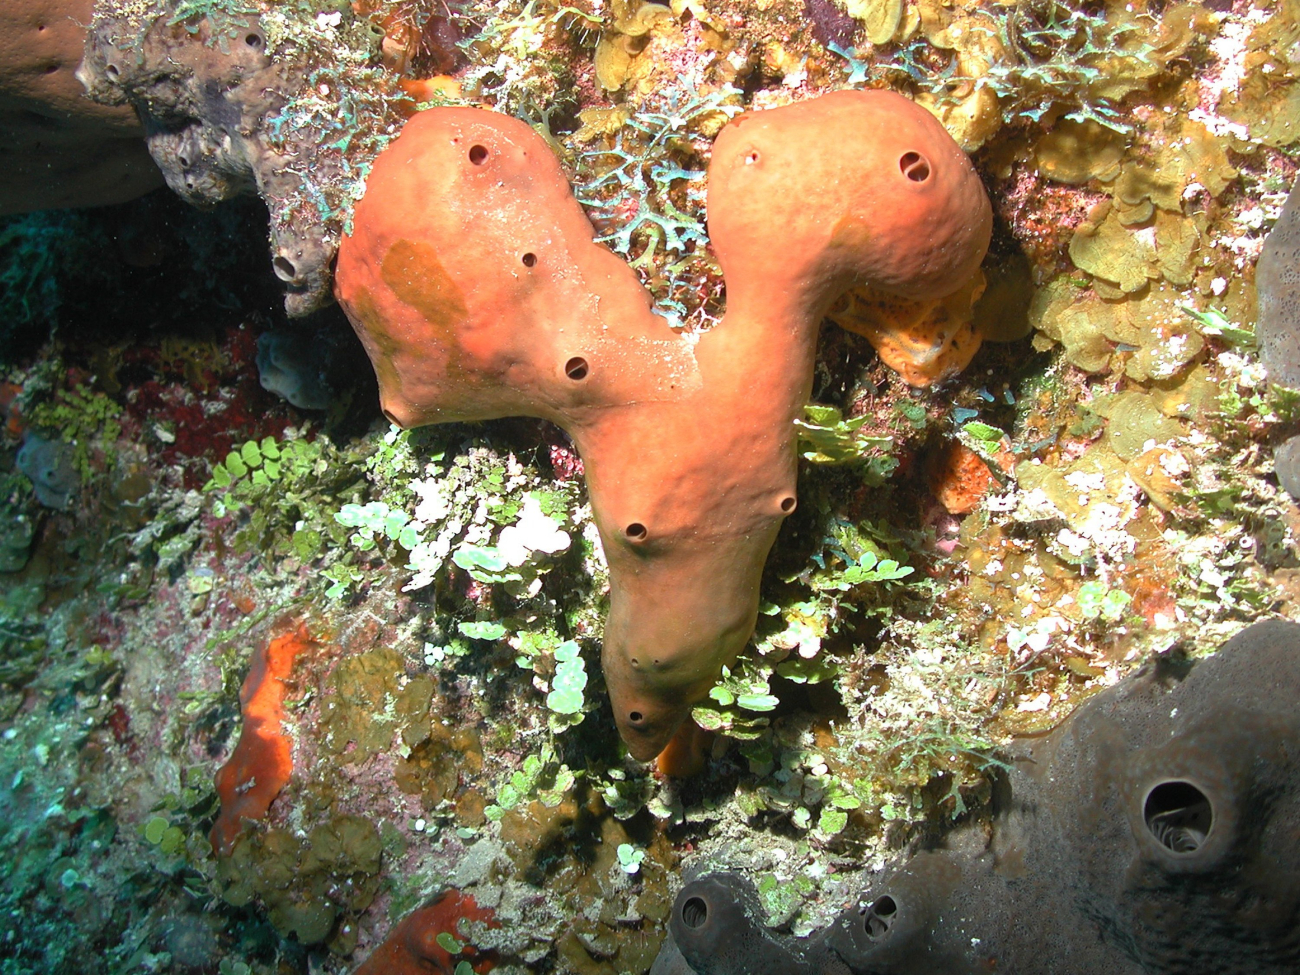 The liver sponge, Plakortis sp